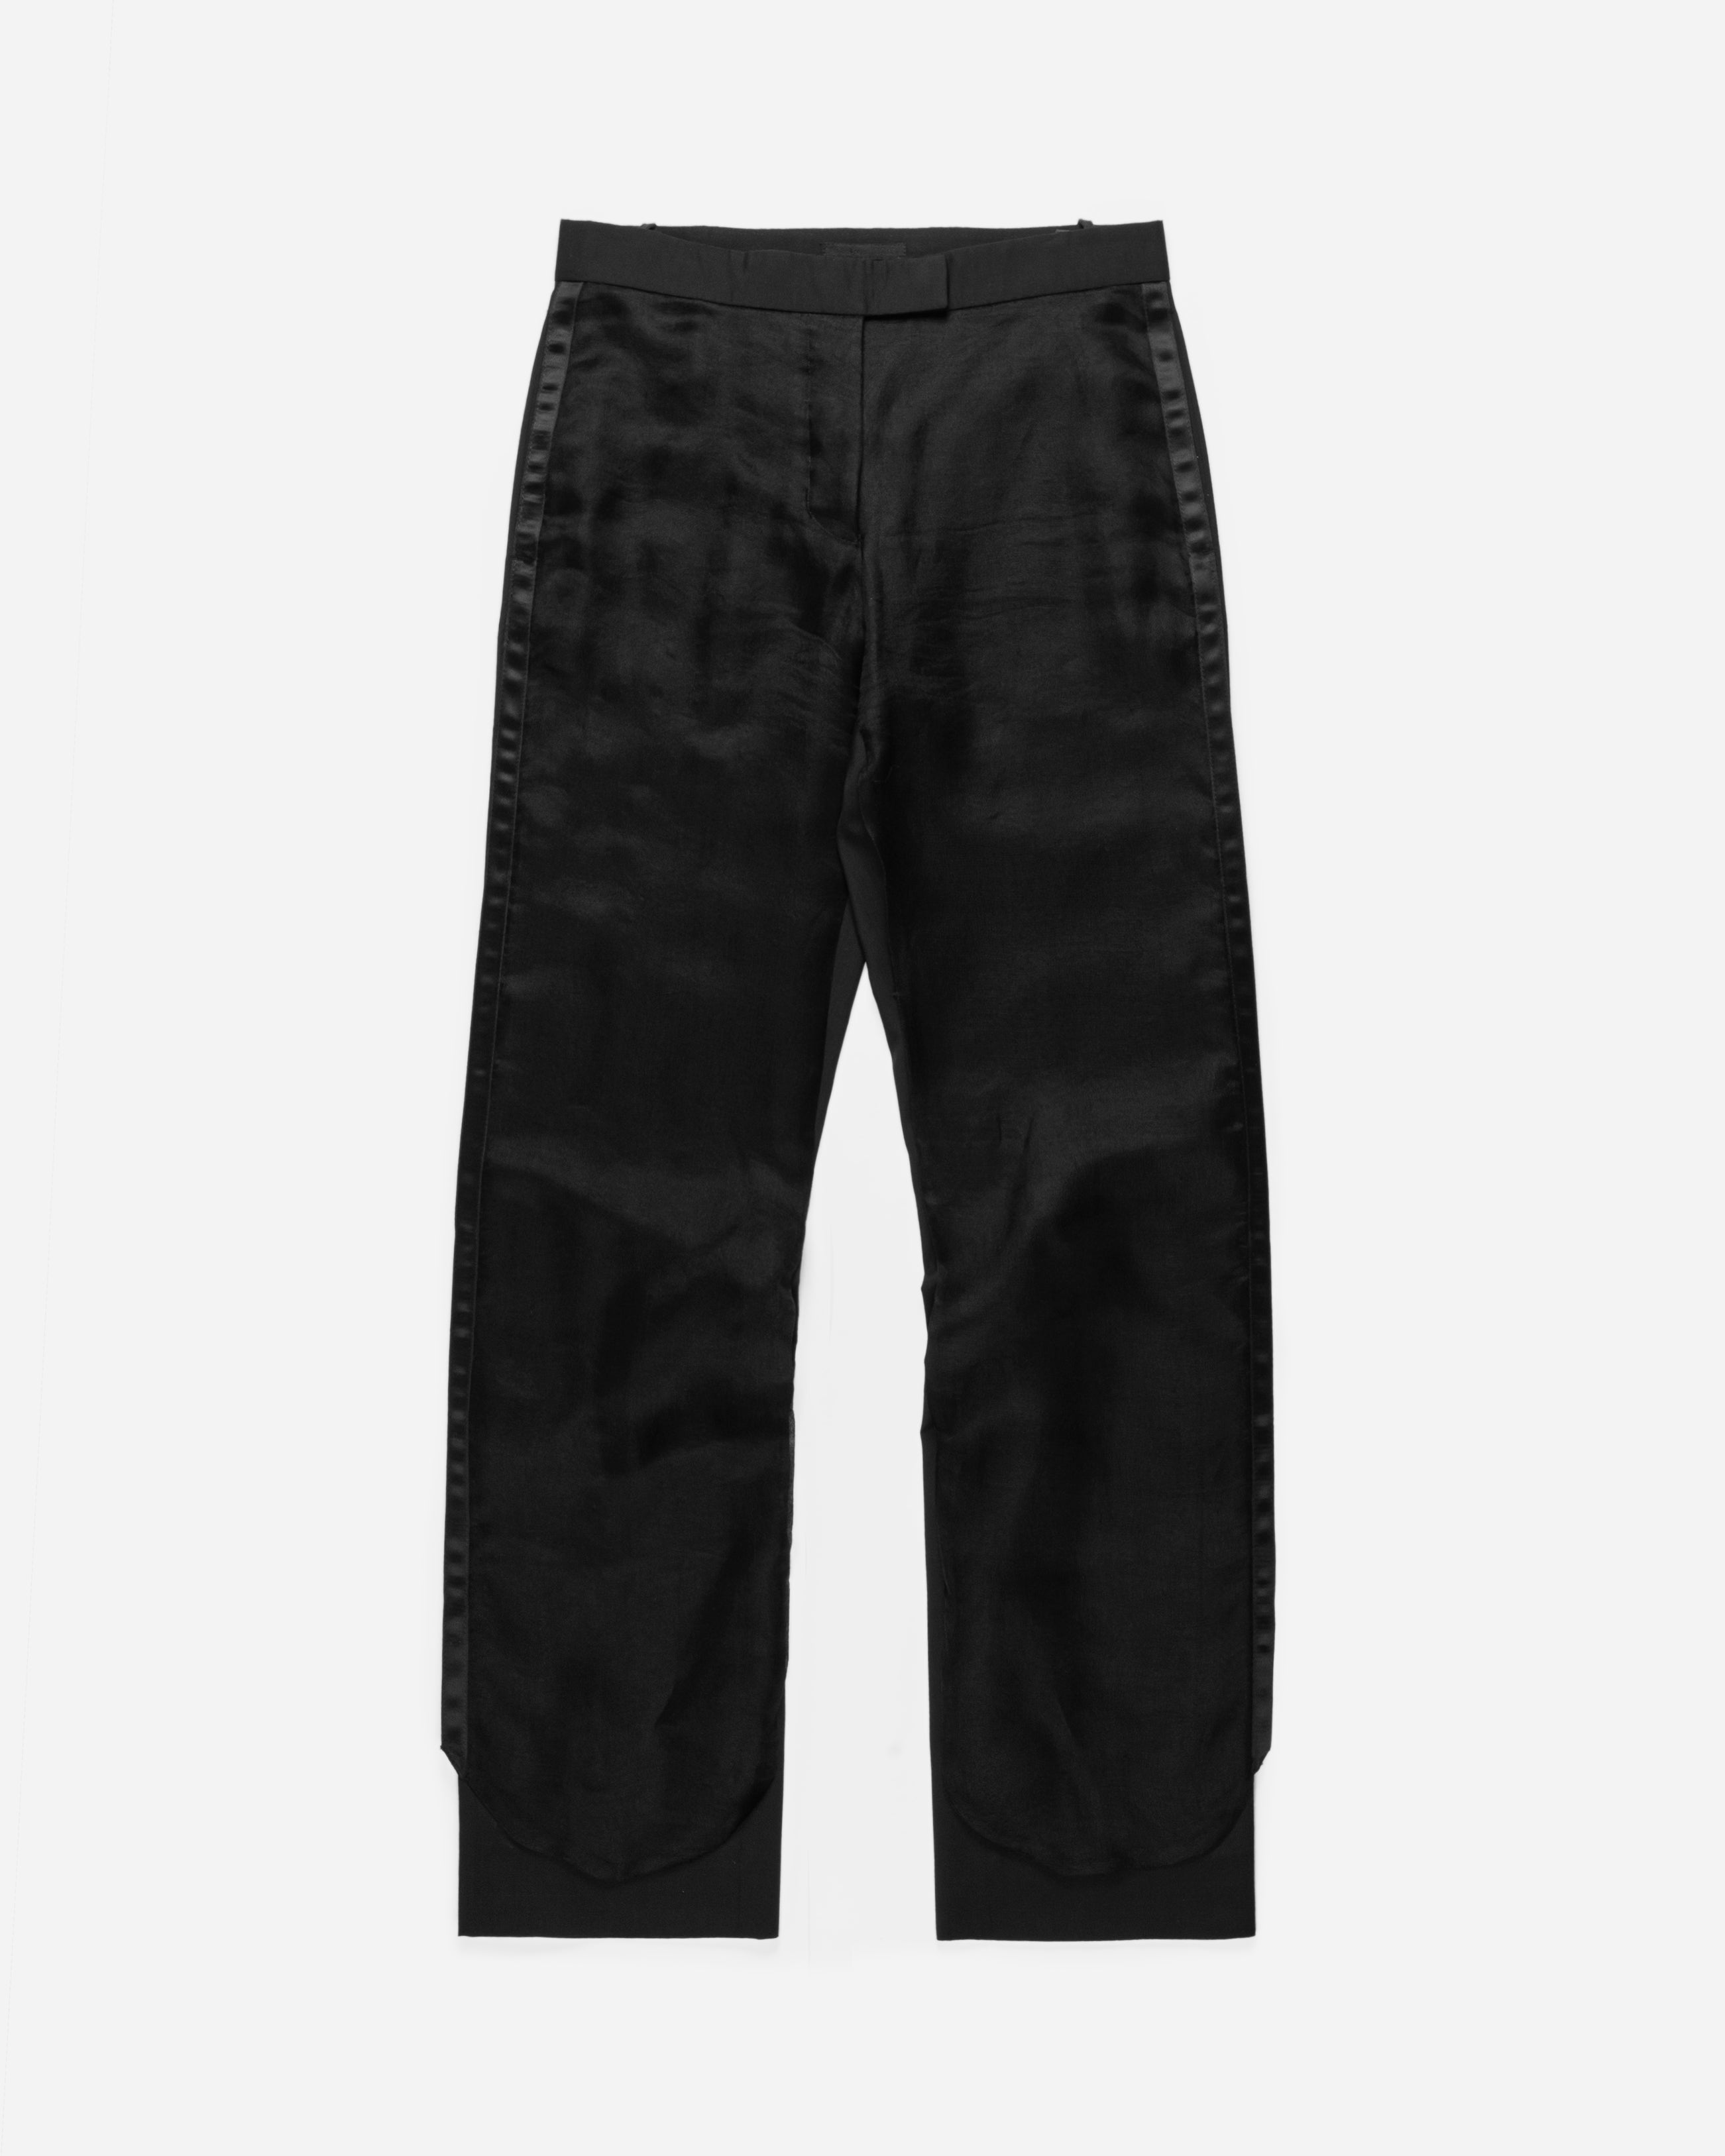 🔥55% OFF🔥 [SALE] Helmut Lang Side Stripe Track Pants Sz. US28 | eBay